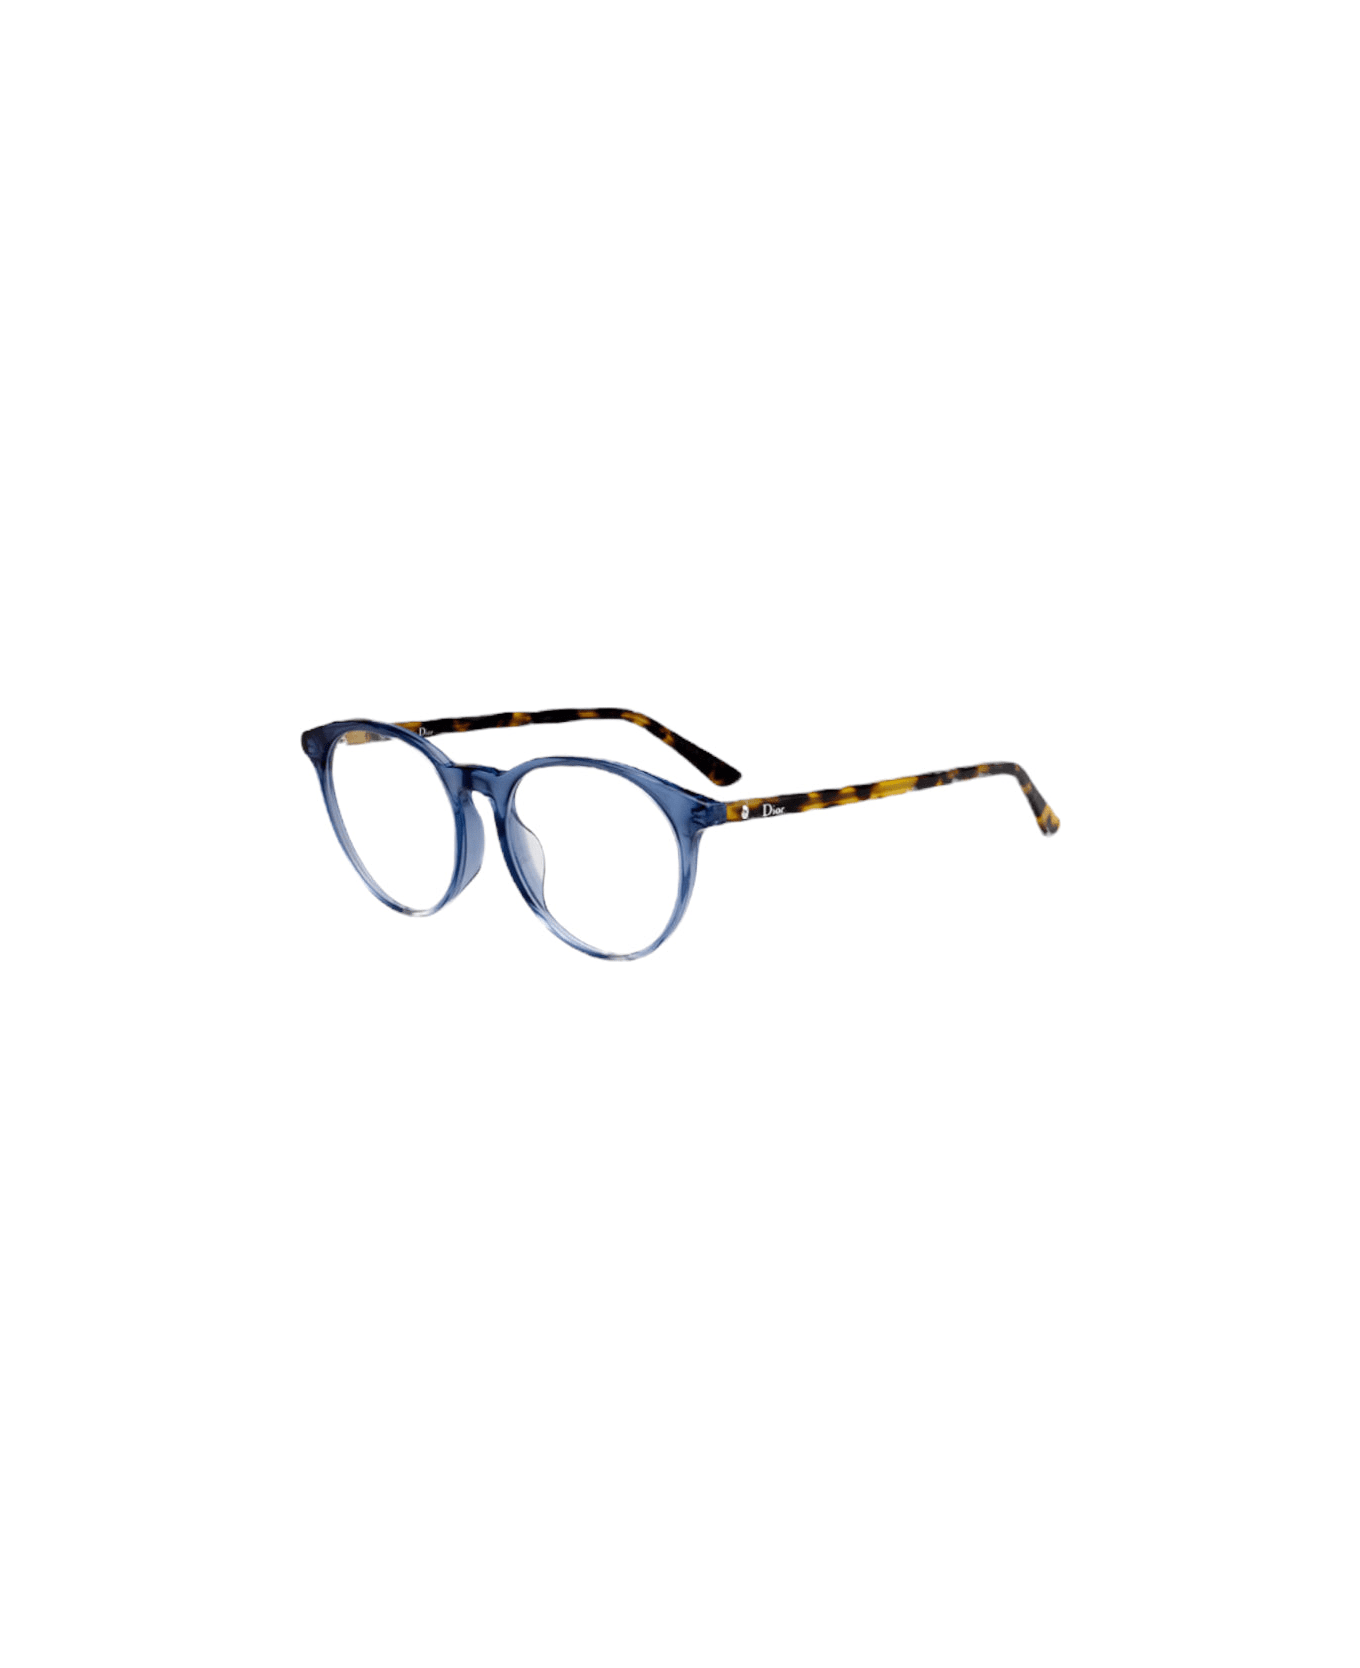 Dior Eyewear Montaigne - Blue & Havana Glasses